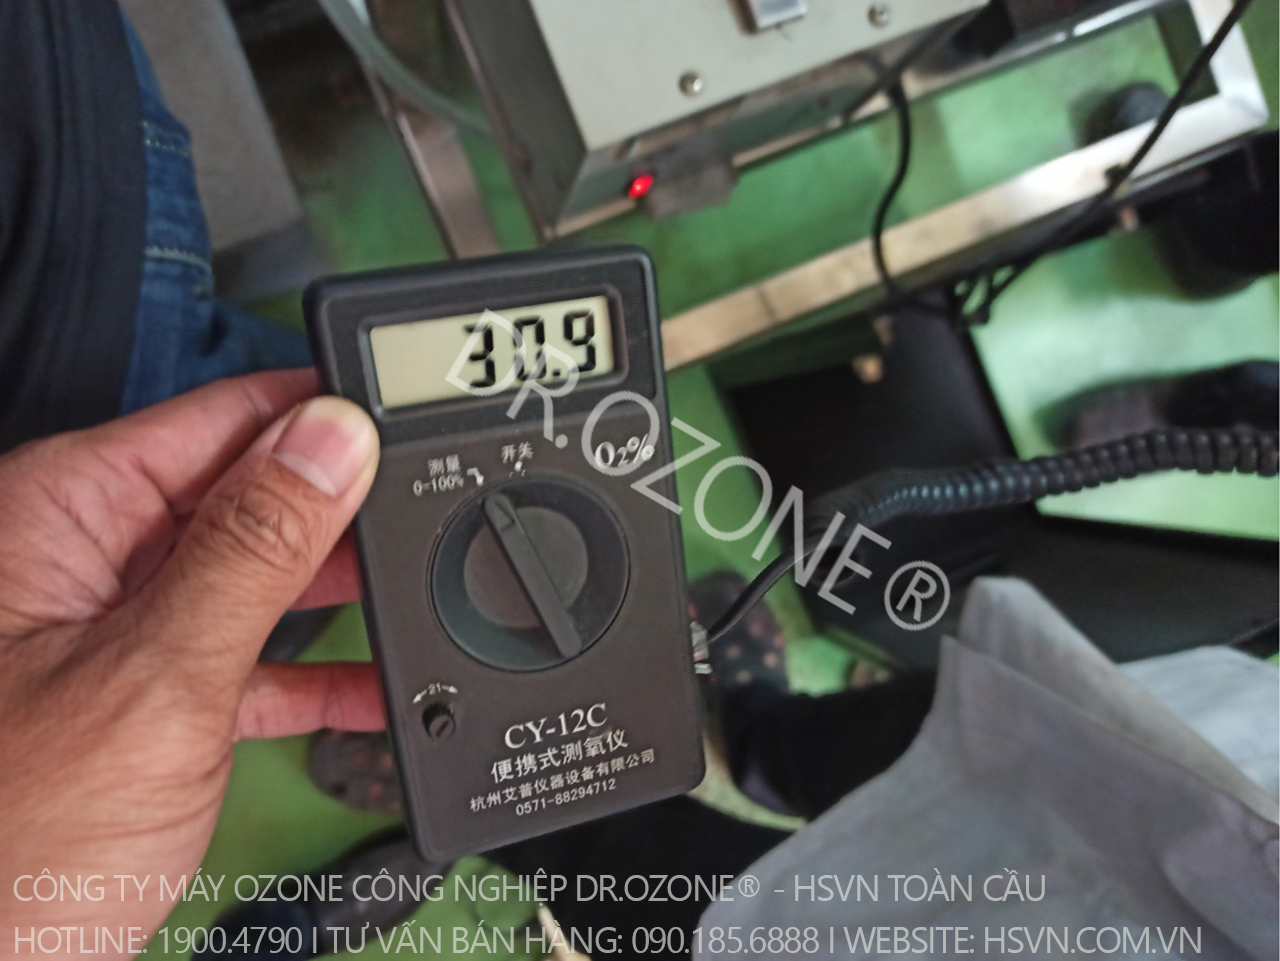 Đo nồng độ oxy và sản lượng ozone máy 15g tại thành phố Hồ Chí Minh